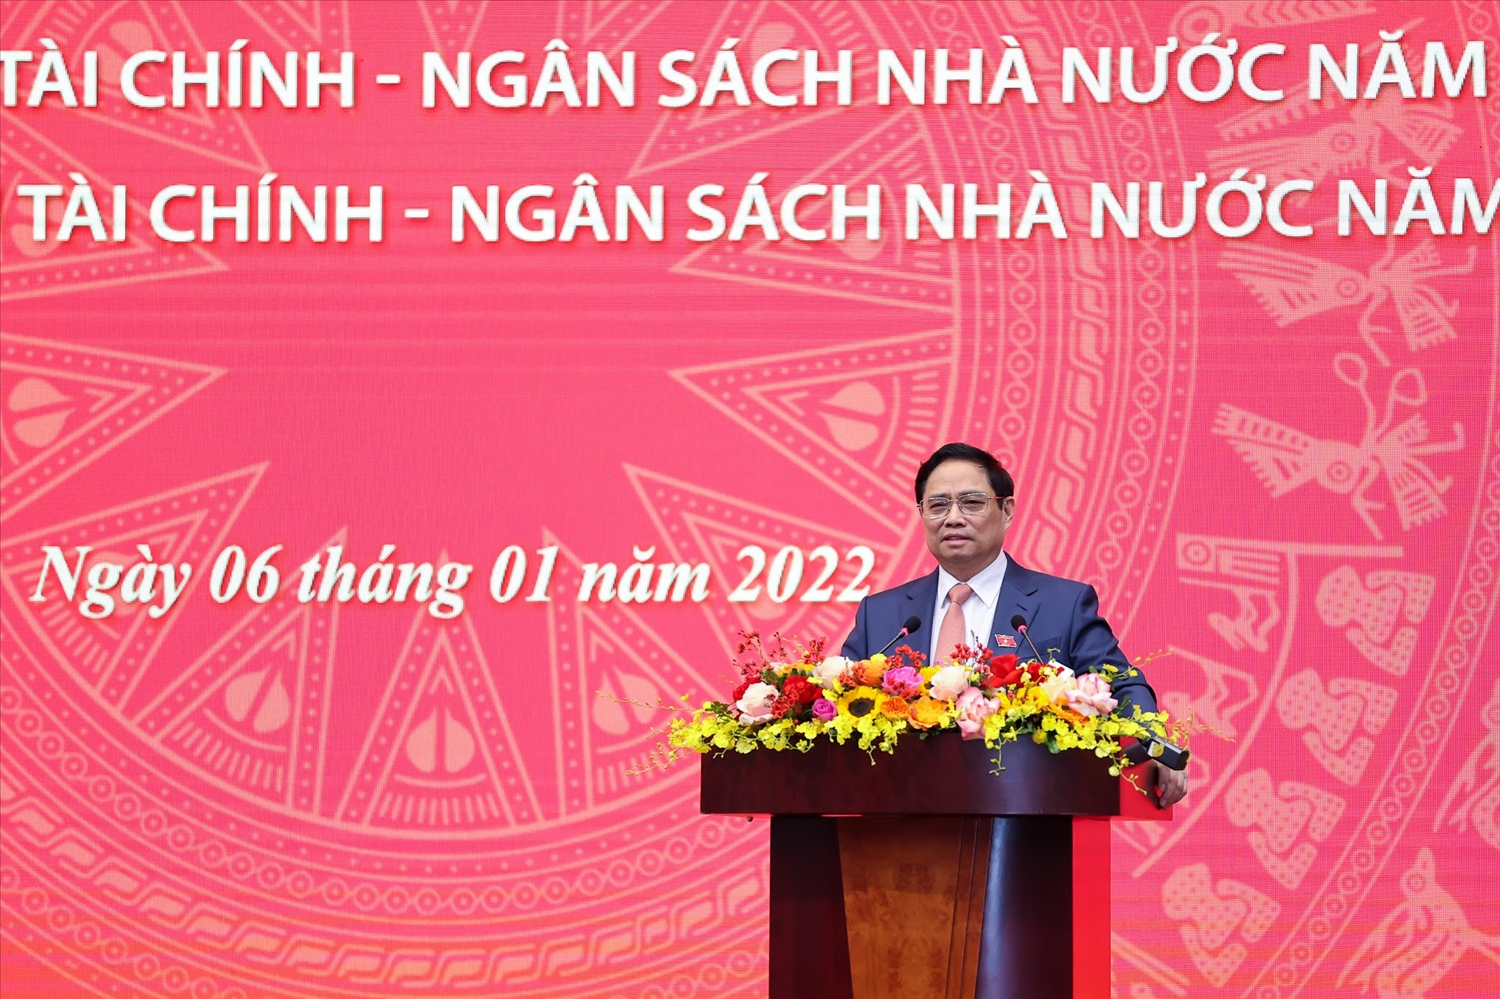 Thủ tướng Phạm Minh Chính nhấn mạnh yêu cầu phải có chính sách khuyến khích thu và tiêu chí phân bổ ngân sách công bằng, minh bạch, chống tiêu cực, chạy chọt. Ảnh: VGP/Nhật Bắc